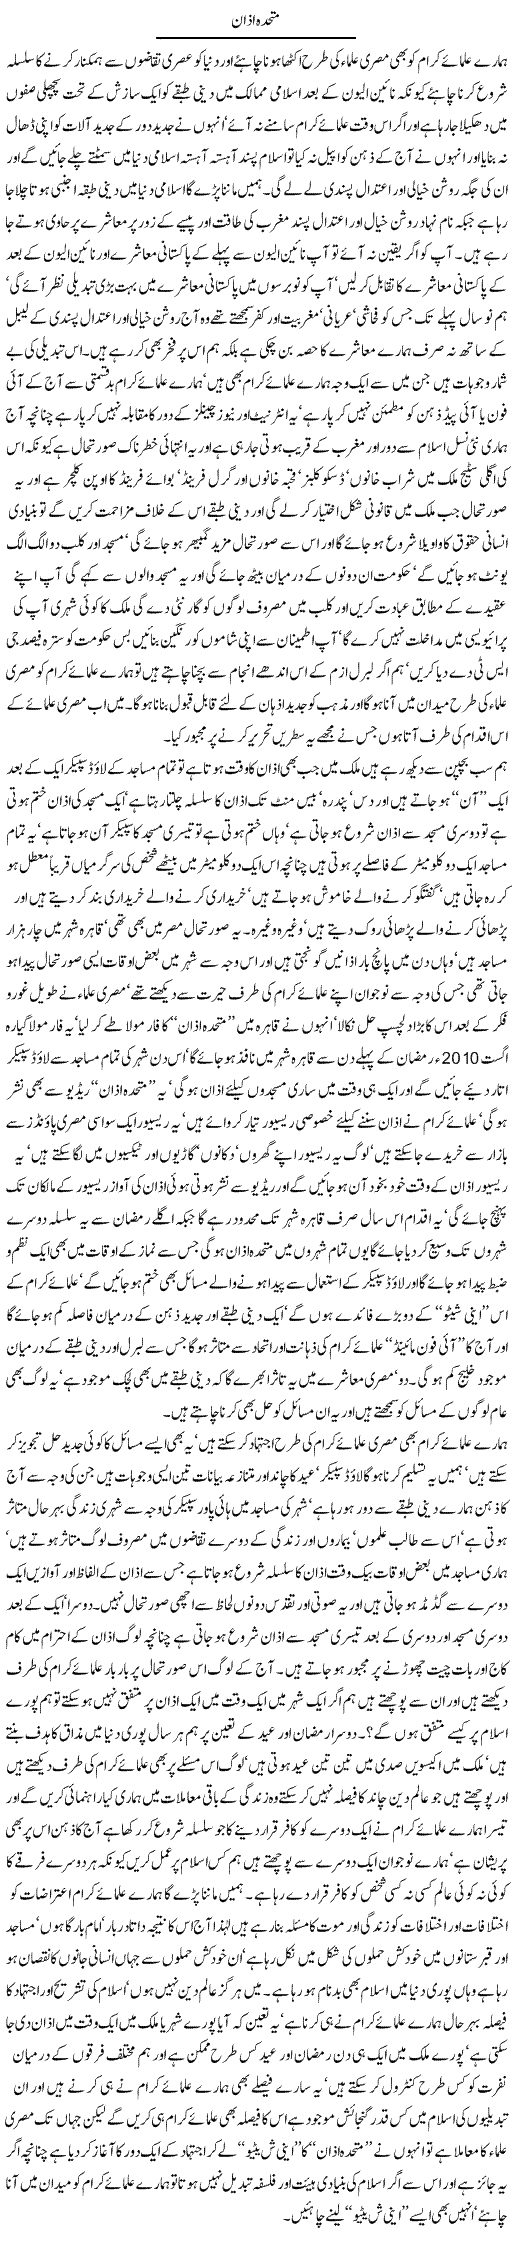 Muthida Azan Express column Javed Chaudhry 9 July 2010